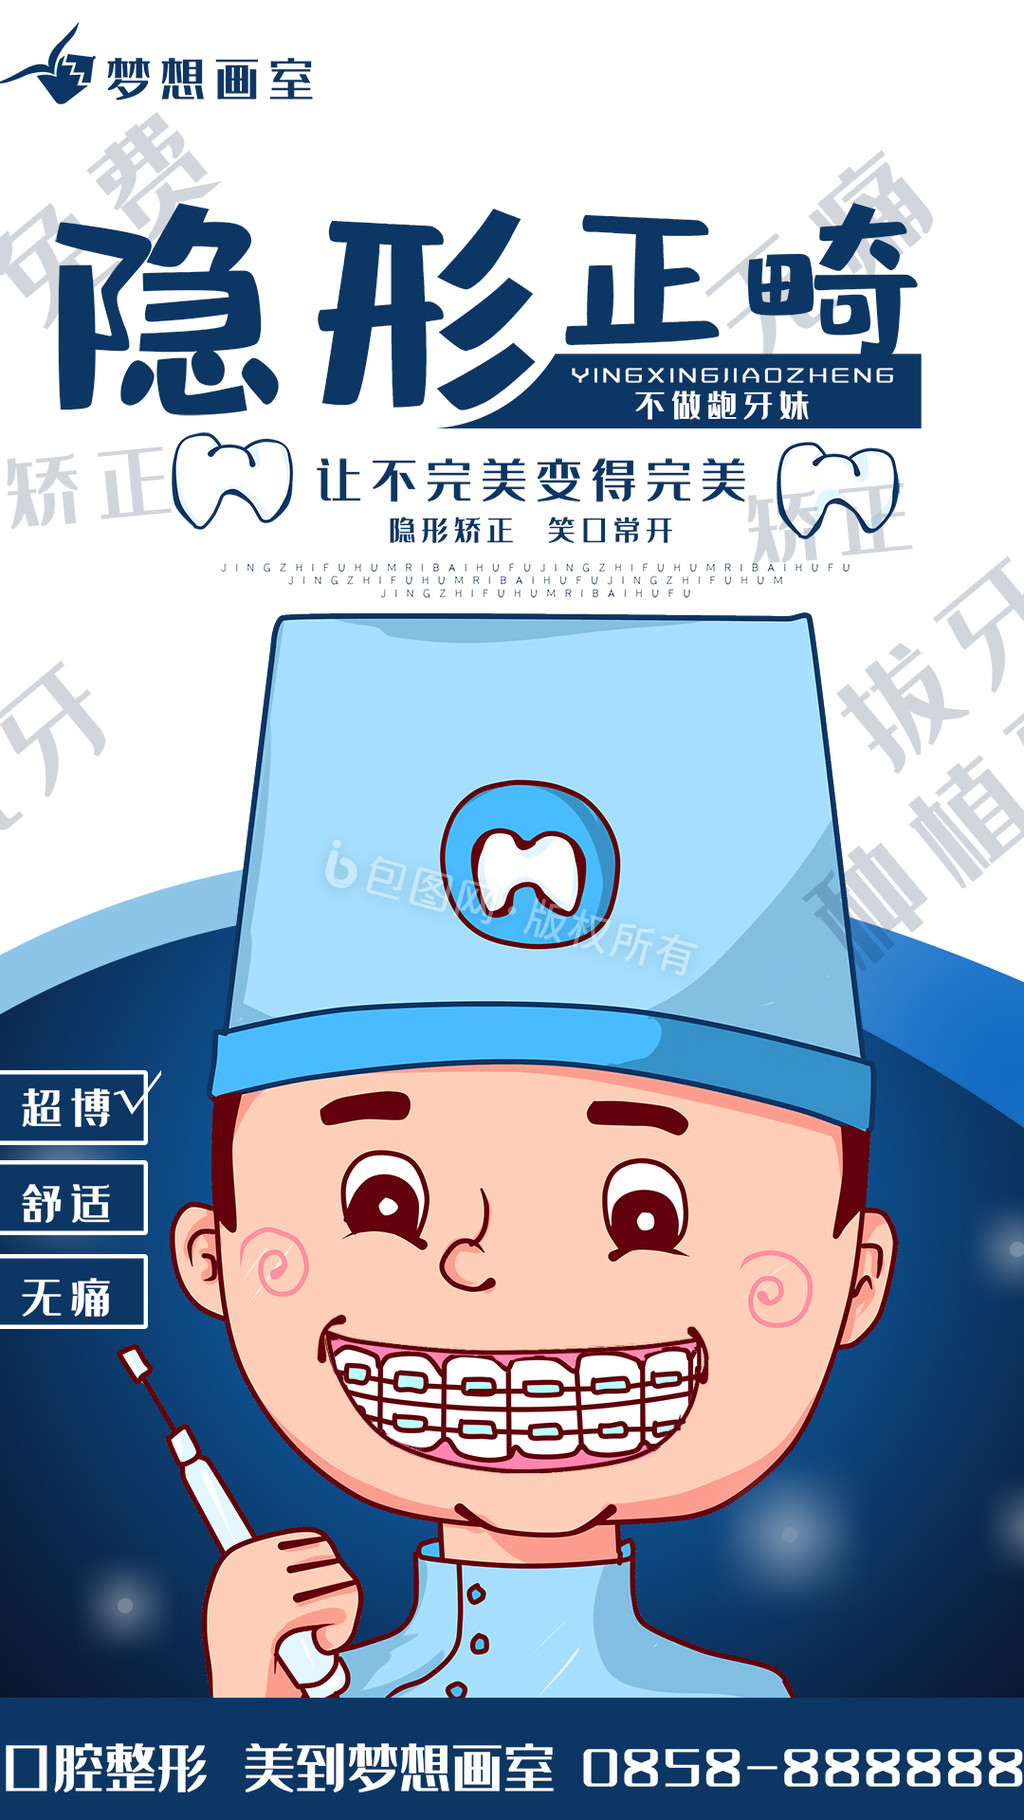 原创手绘牙齿矫正牙医牙科手机海报GIF图片